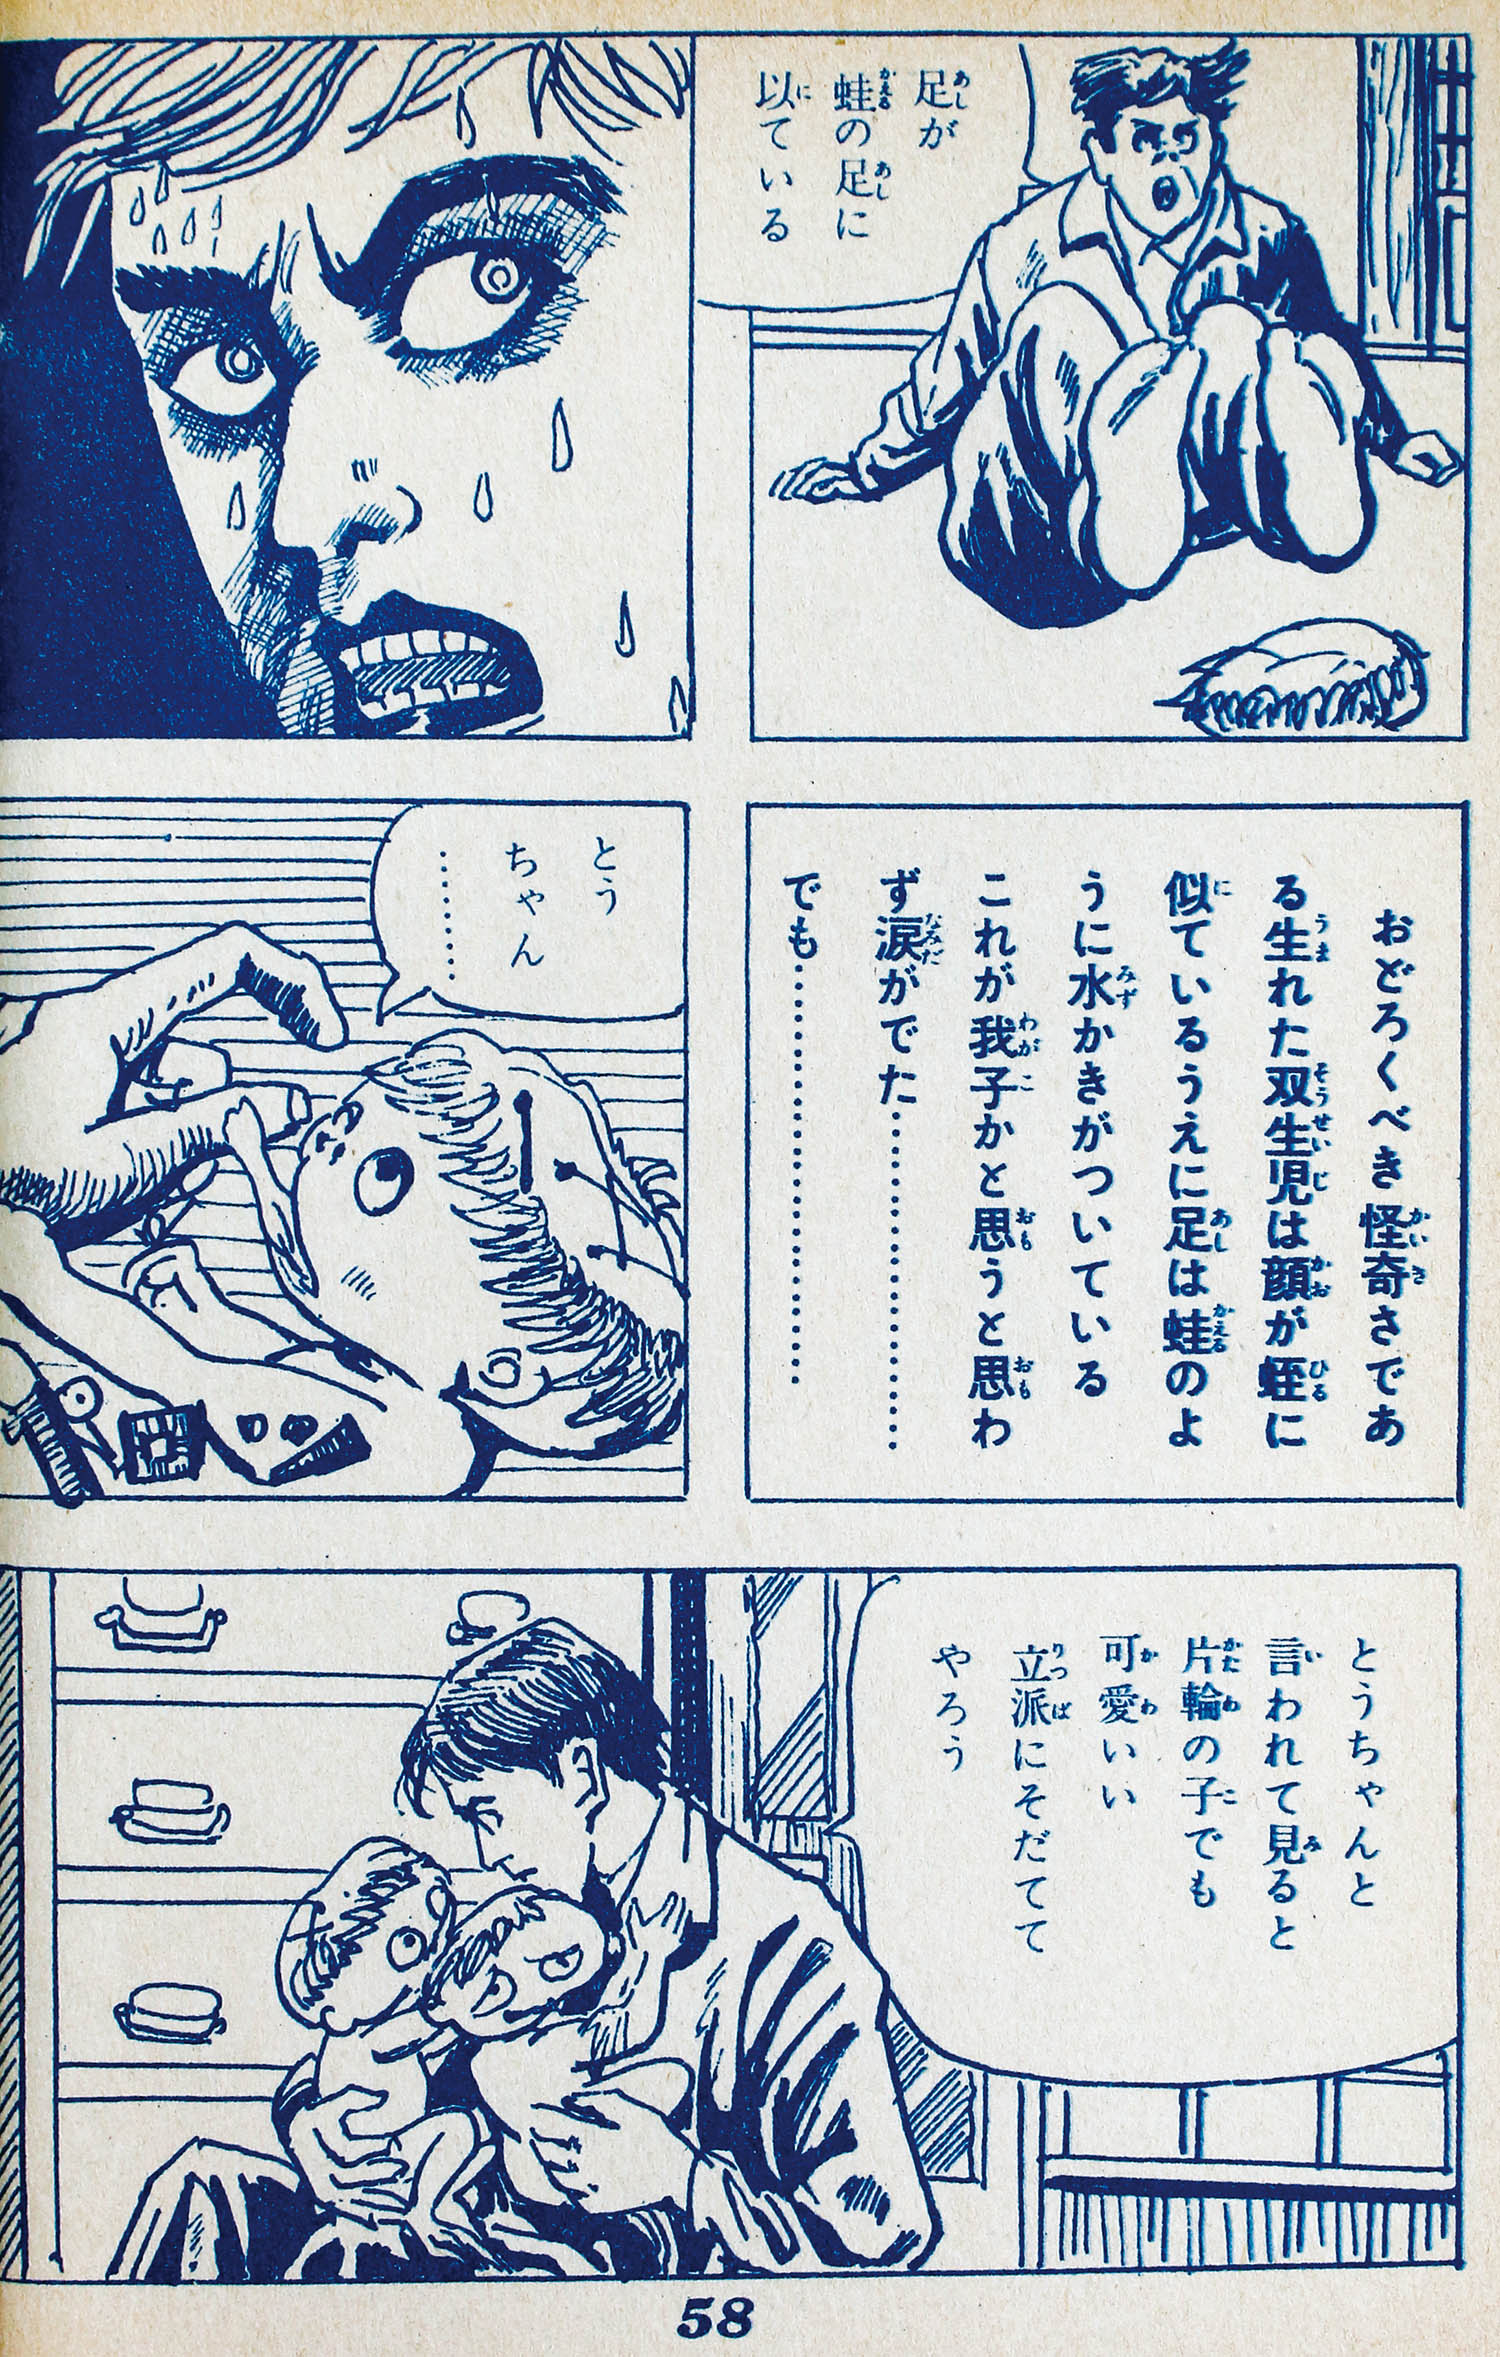 兎月書房/黒須喜代治「死絵奇談シリーズ全2巻セット」